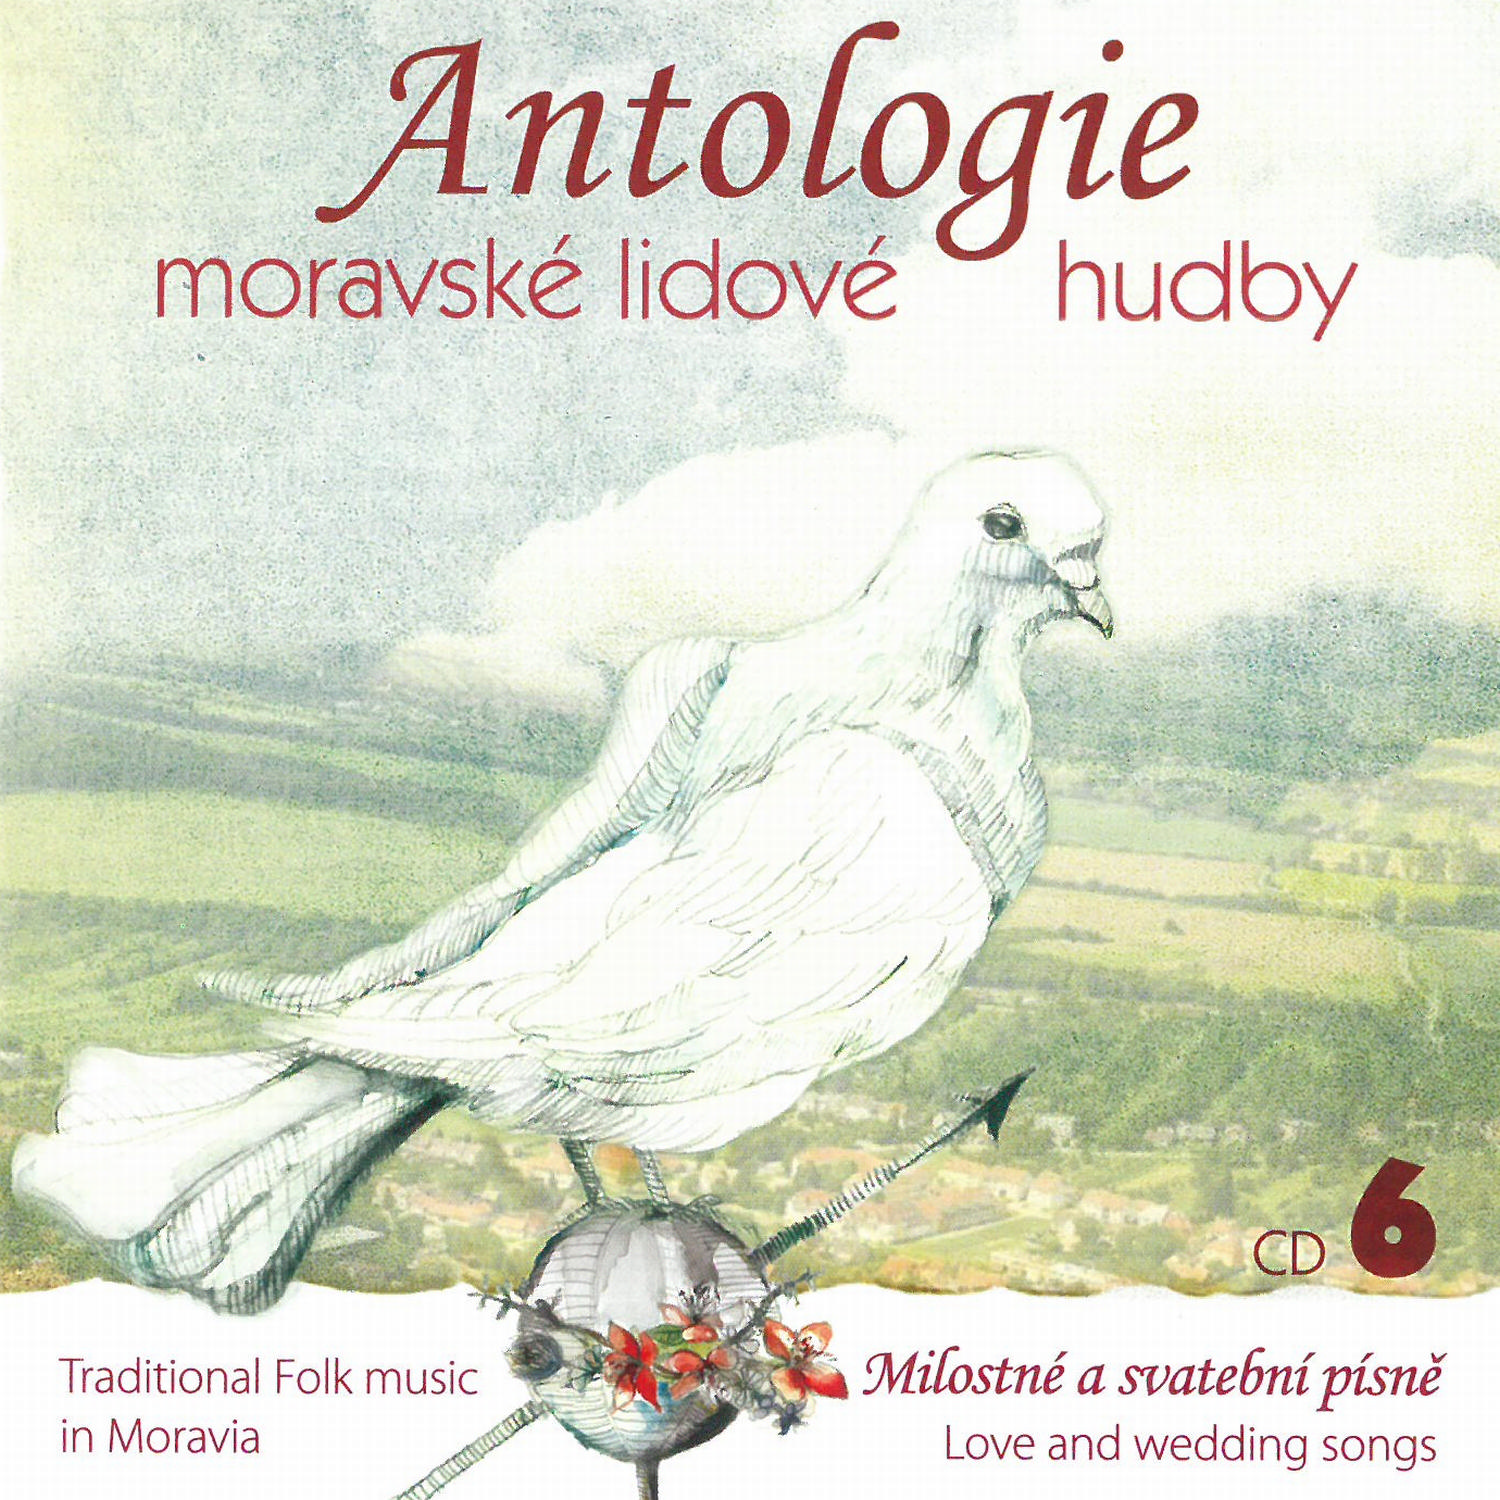 CD Shop - ANTOLOGIE MORAVSKE LIDOVE HUDBY CD6 